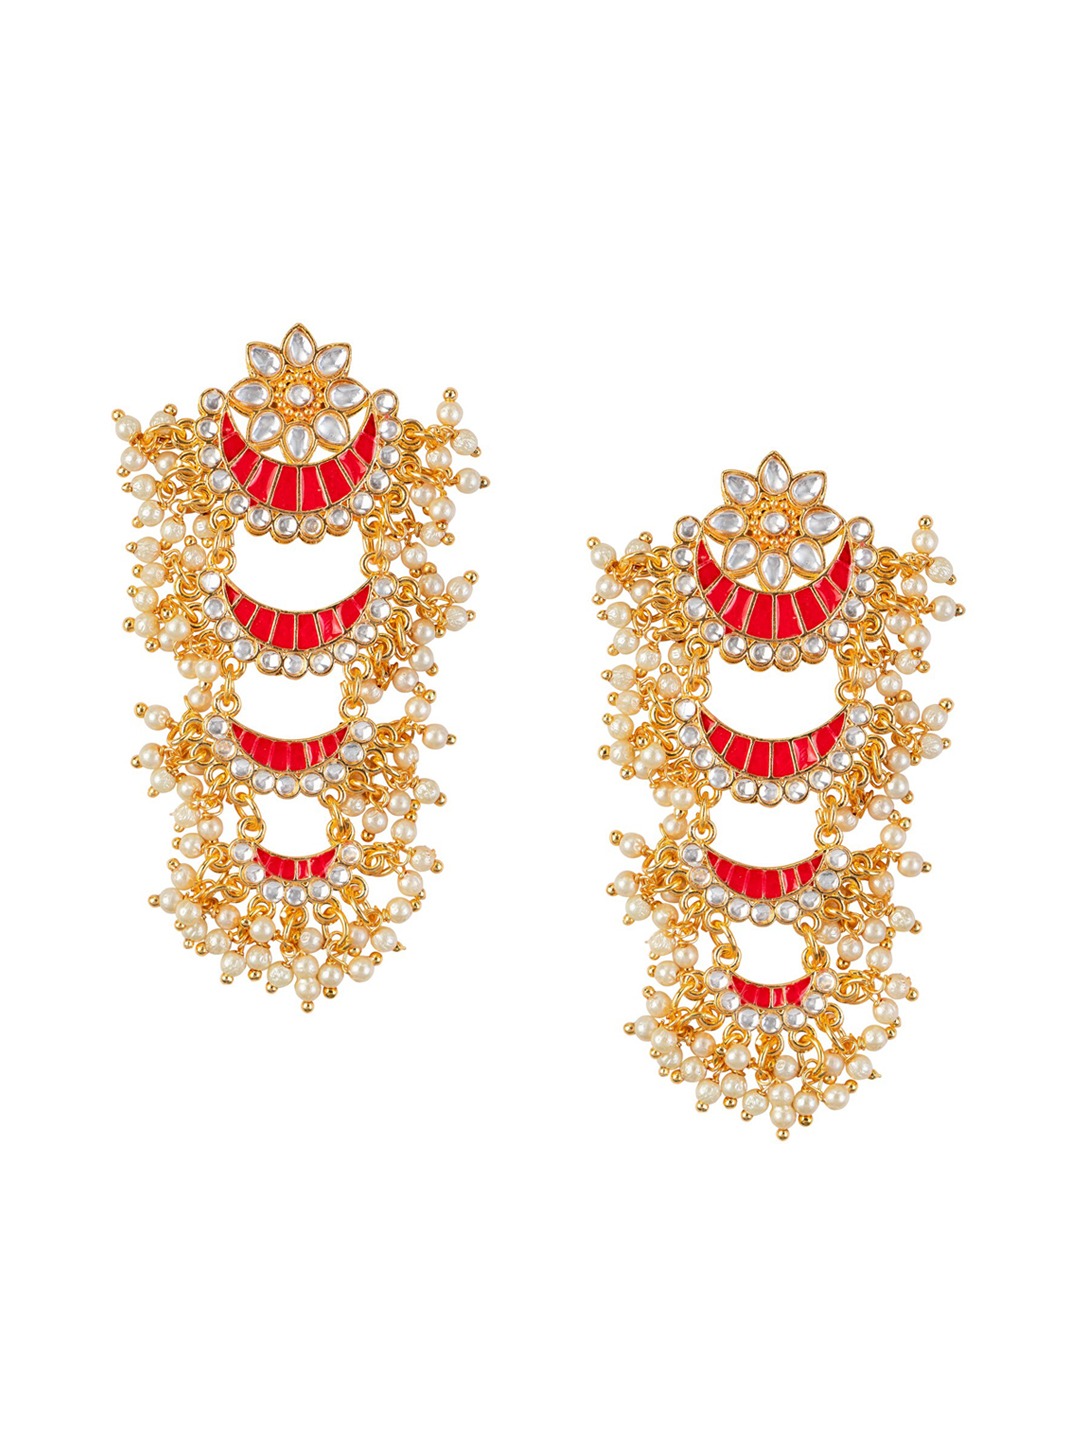 Women's Gold-Toned Pink Enamel Kundan Studded & Pearl Beaded Chandbali Earrings - Morkanth